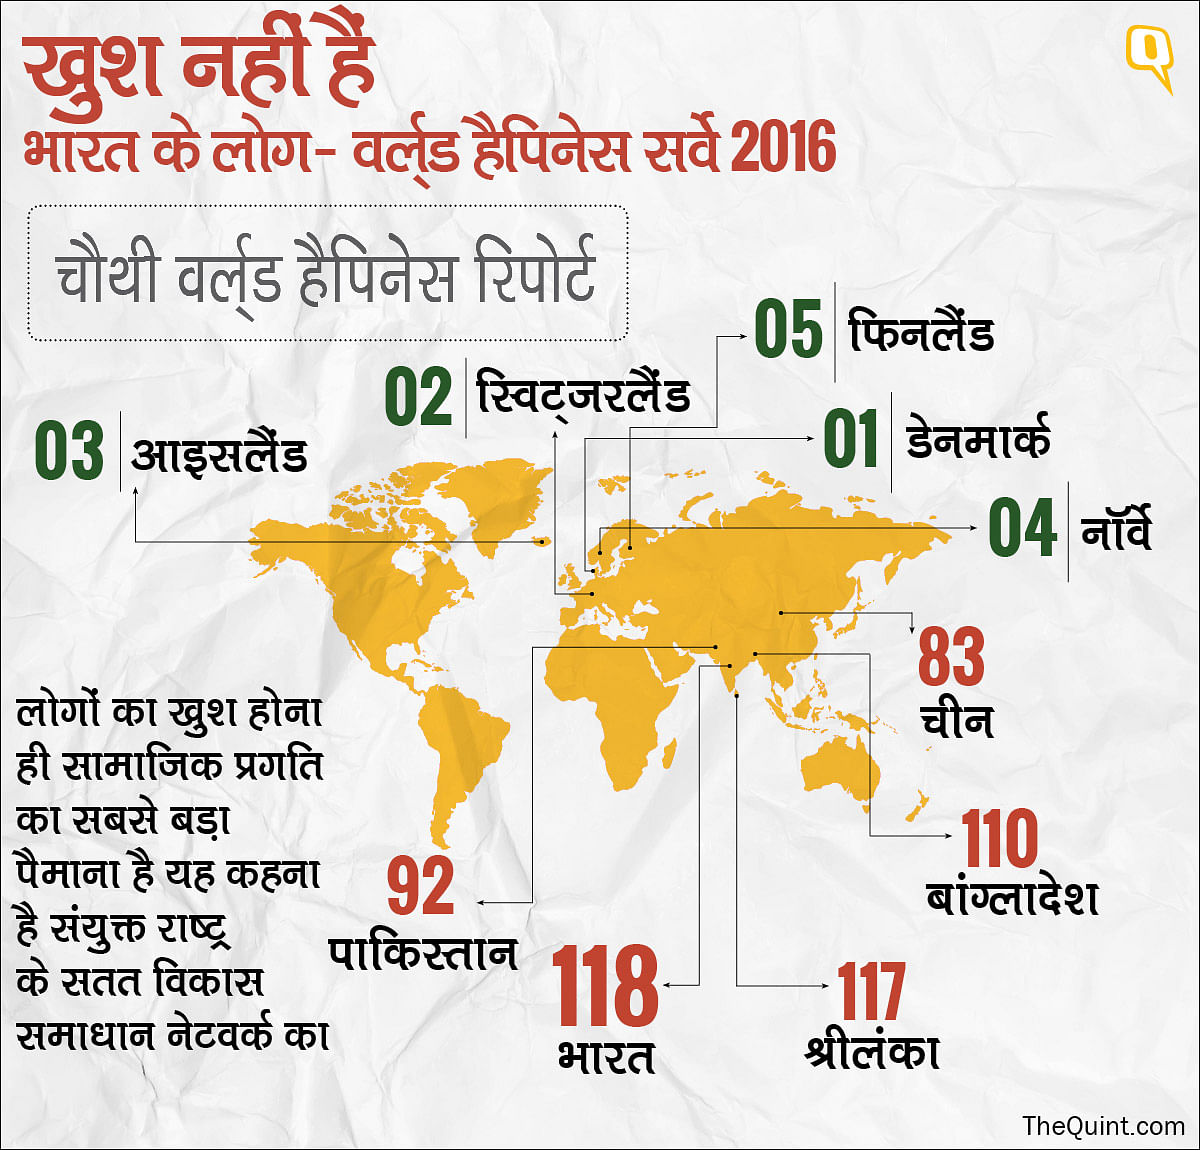 दुनिया में खुशी के आंकड़े पर 118 नंबर पर ठहरता है भारत.